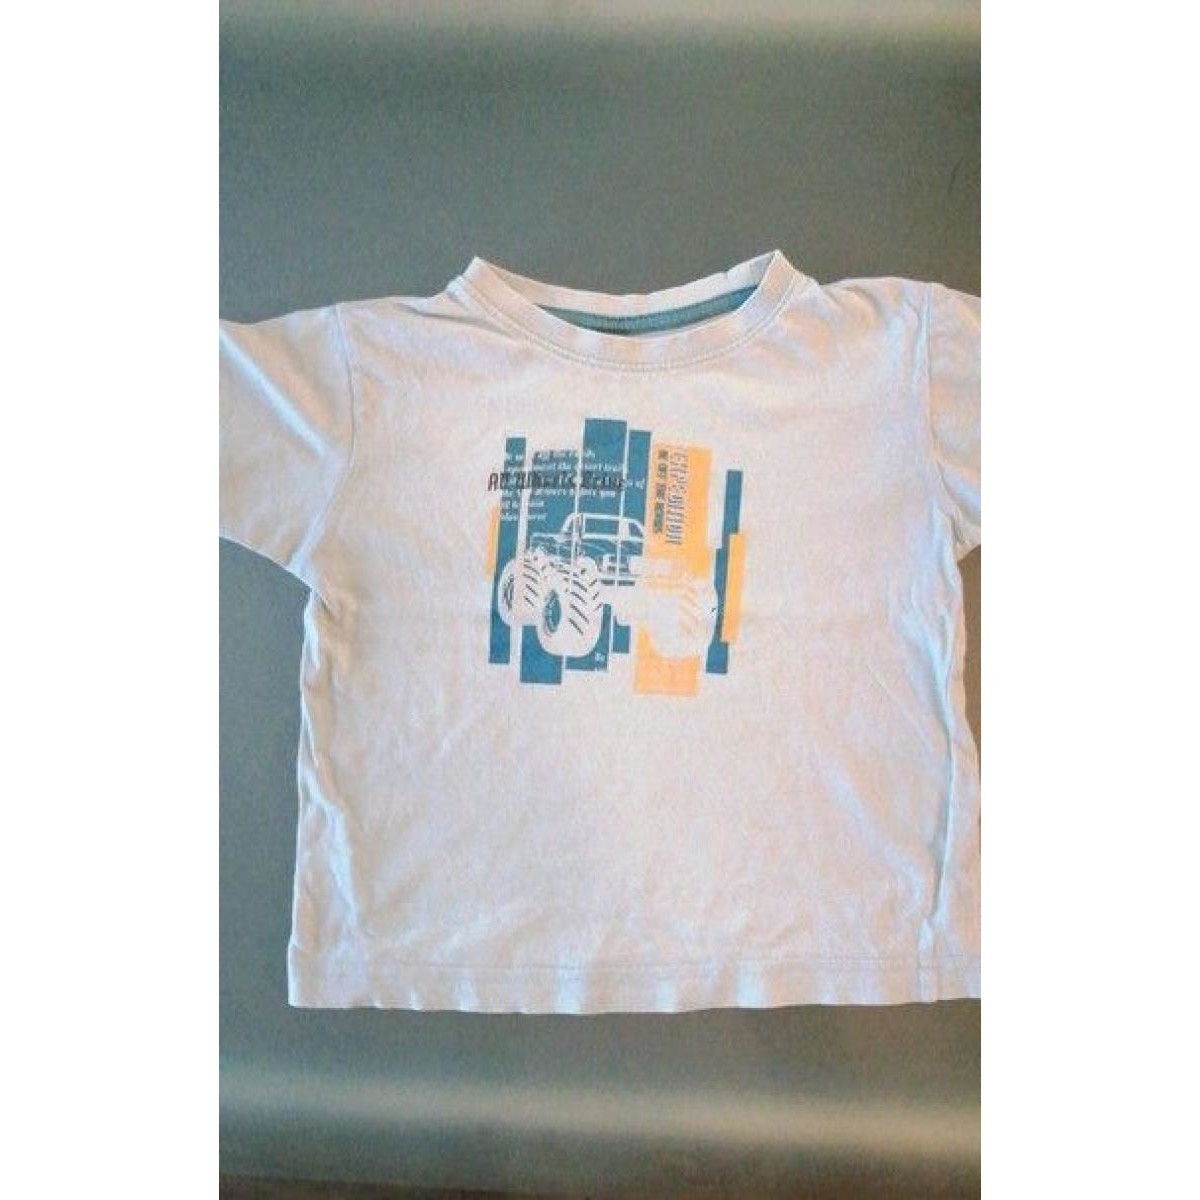 Vêtements Garçon Y Challenger Entraînement T-shirt Junior Boys T-shirt manches courtes Bleu